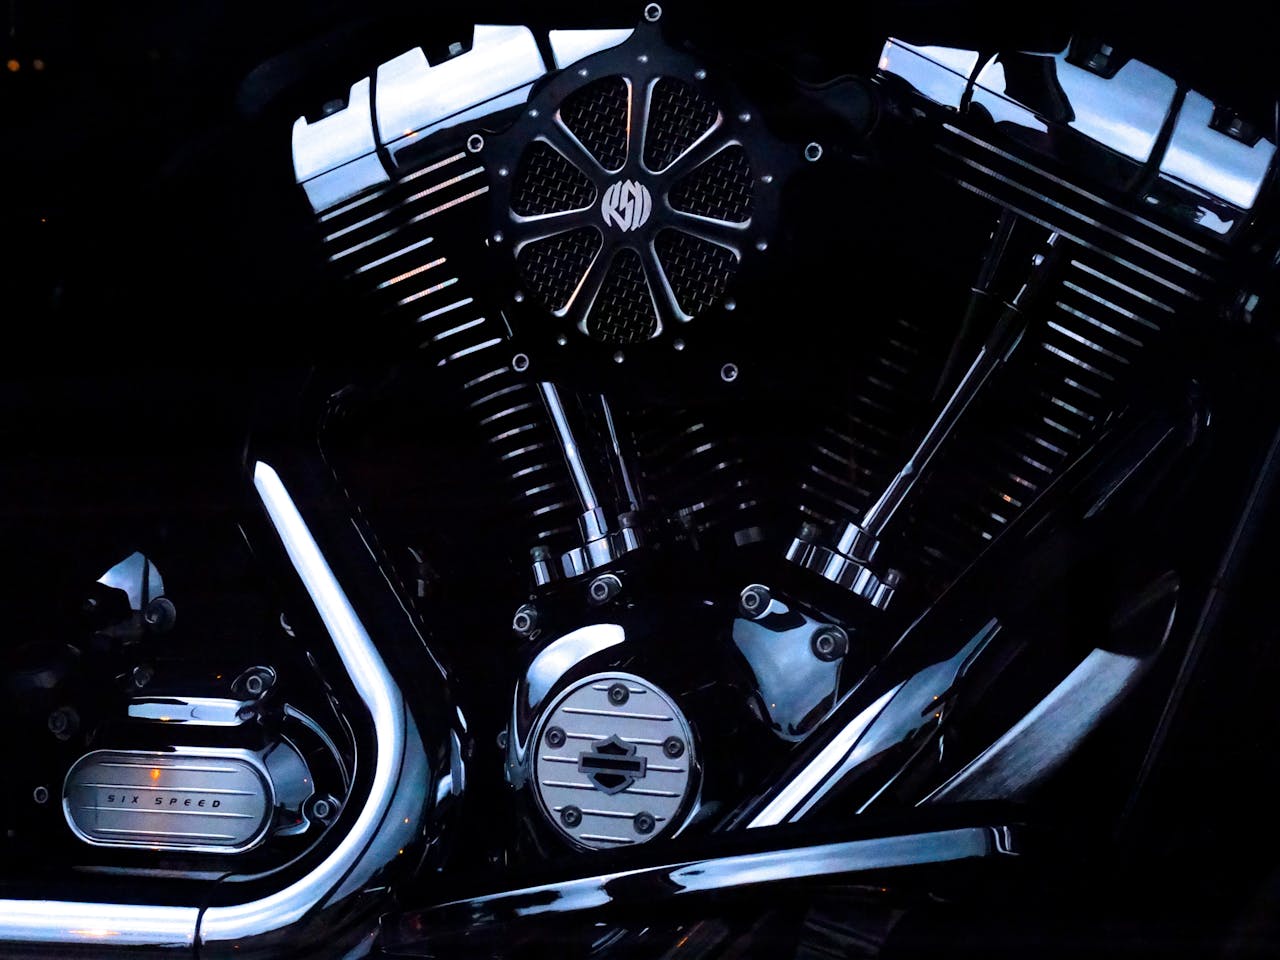 Jak kreatywnie fotografować stare motocykle i ukazywać ich detale.